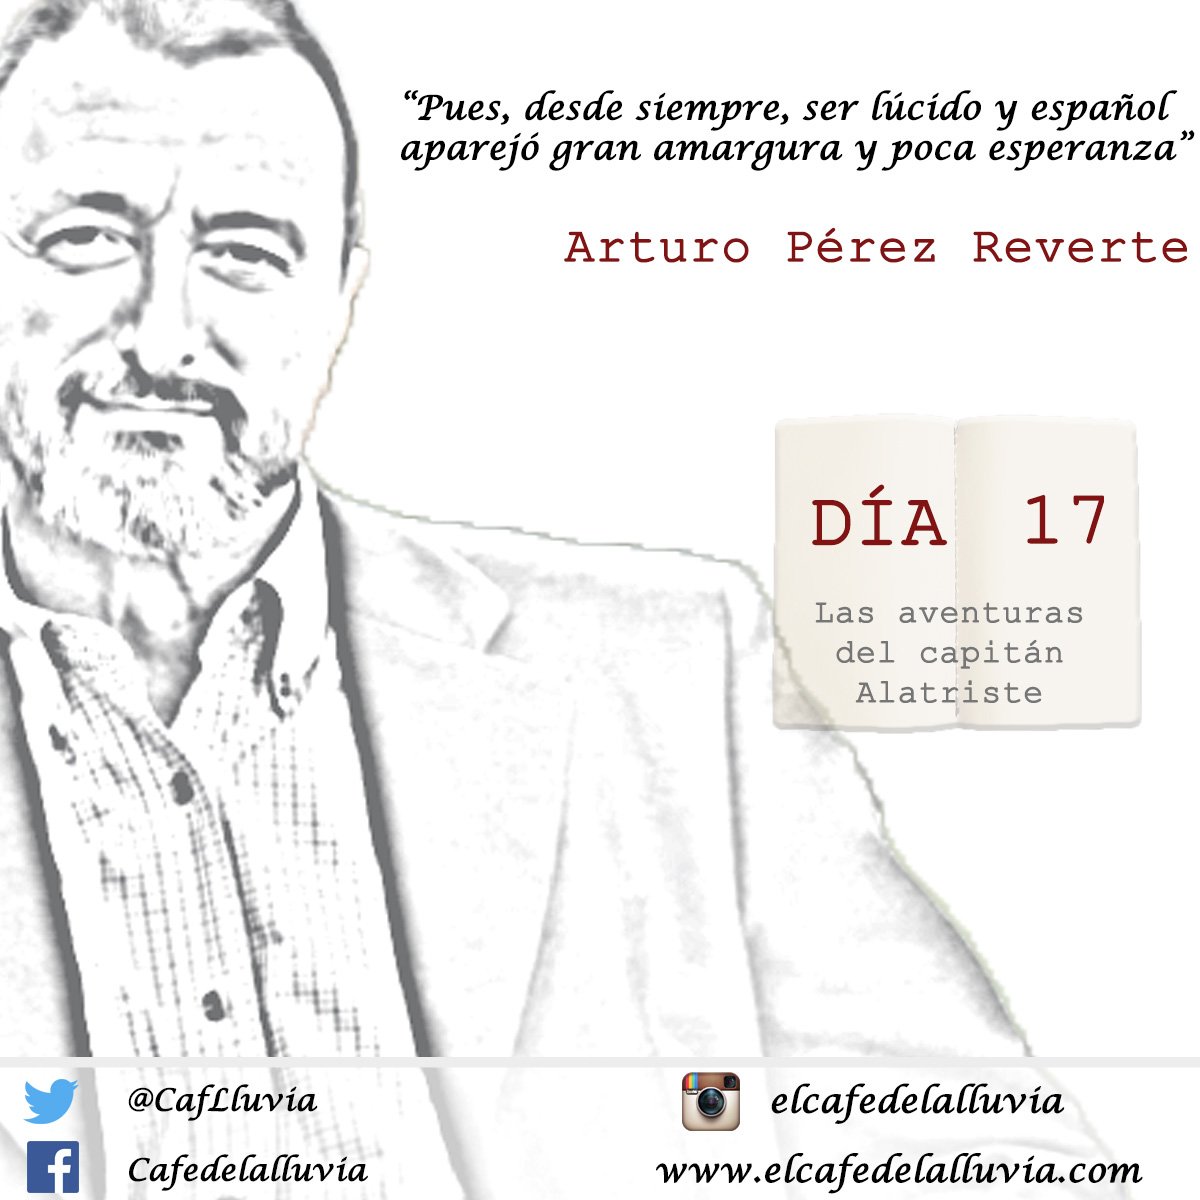 Hoy nos dejamos llevar en #23DíasDeLibro por #LasAventurasDelCapitánAlatriste de Arturo Pérez Reverte :)